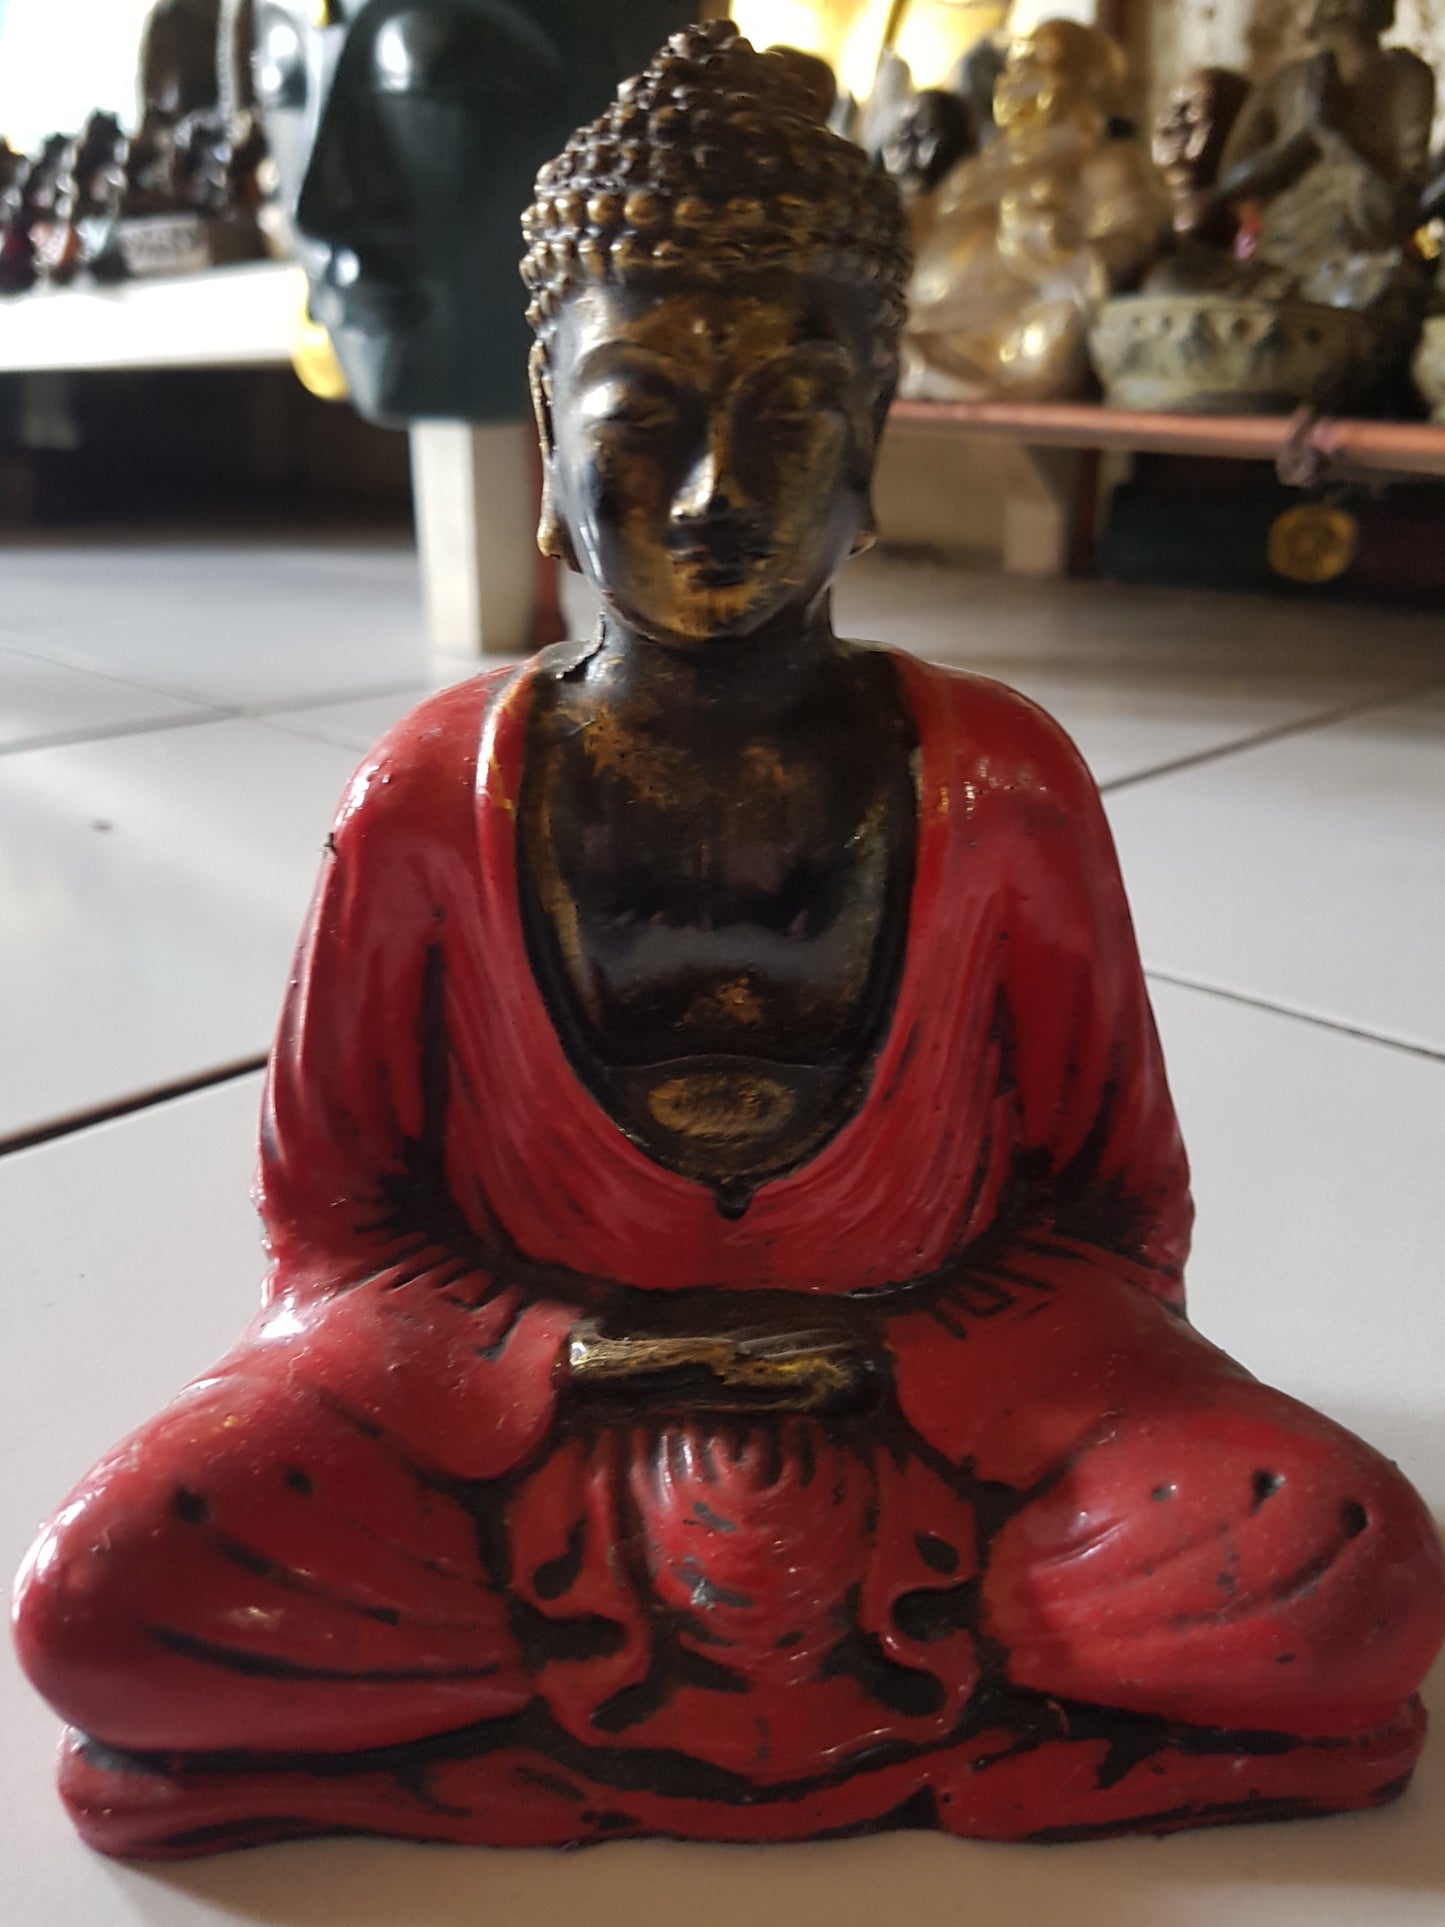 Sitting Buddha resin meditation 55-60 cm